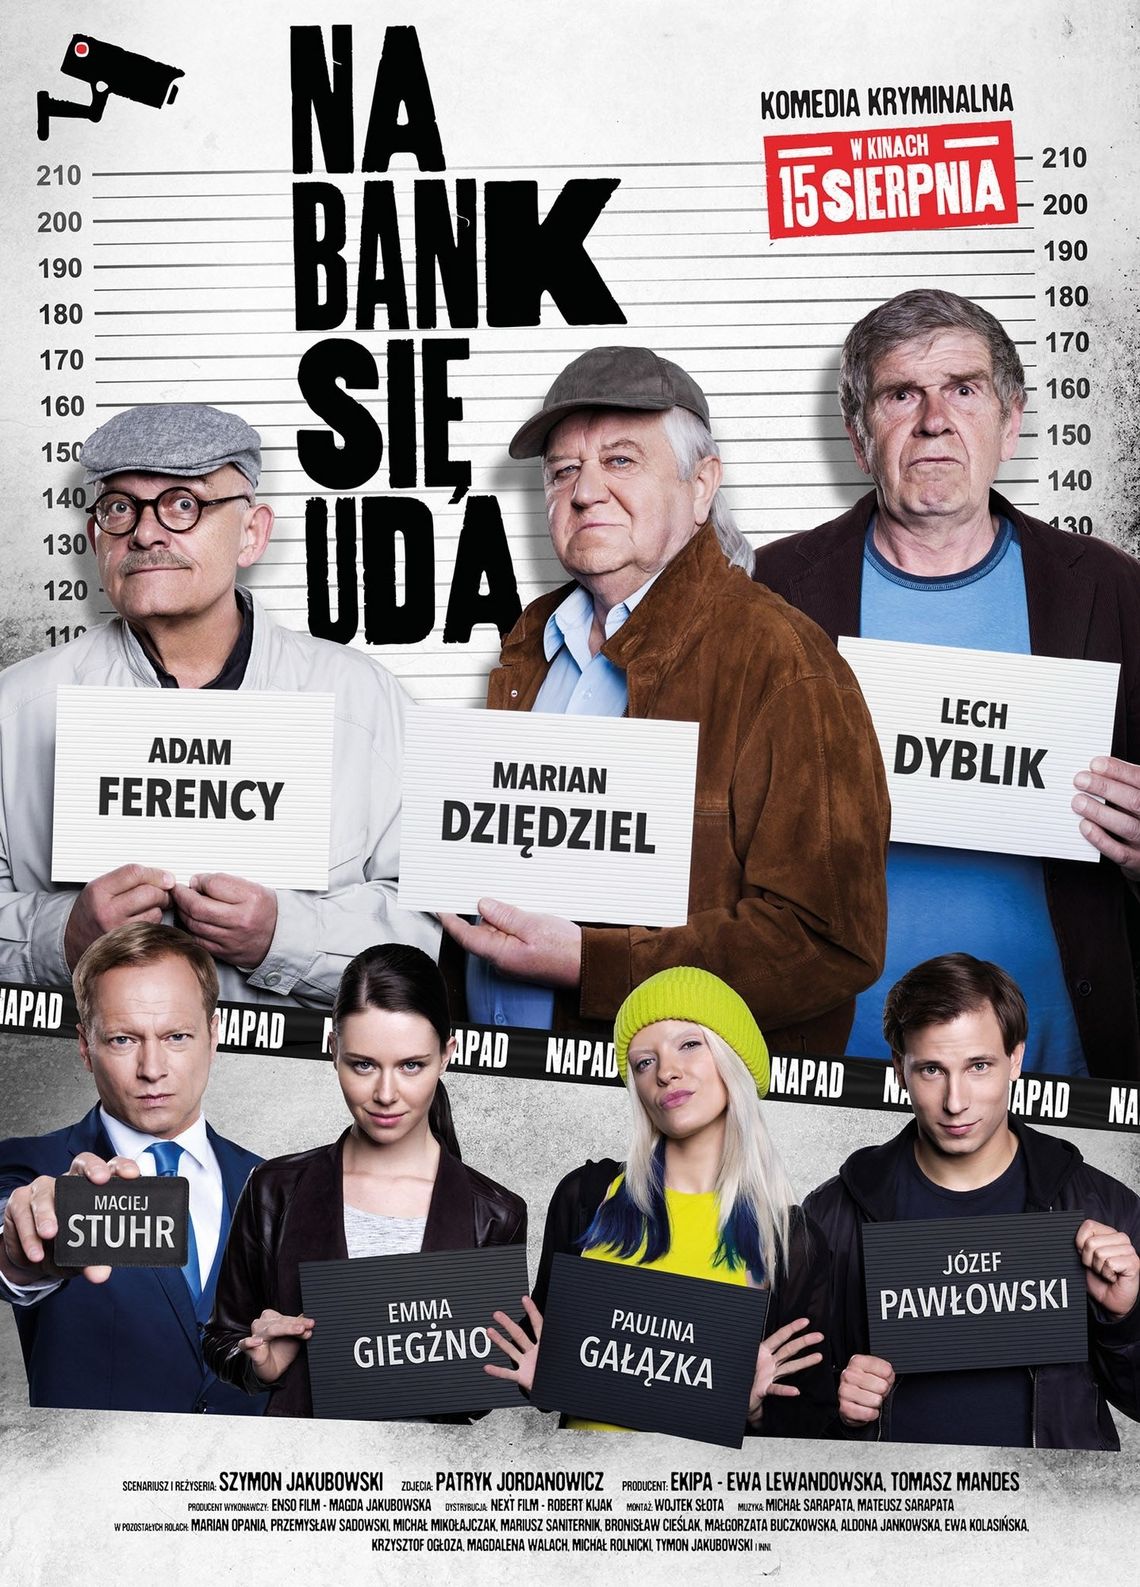 Ogólnopolska premiera polskiej komedii „Na bank się uda" w Kinie Łuków